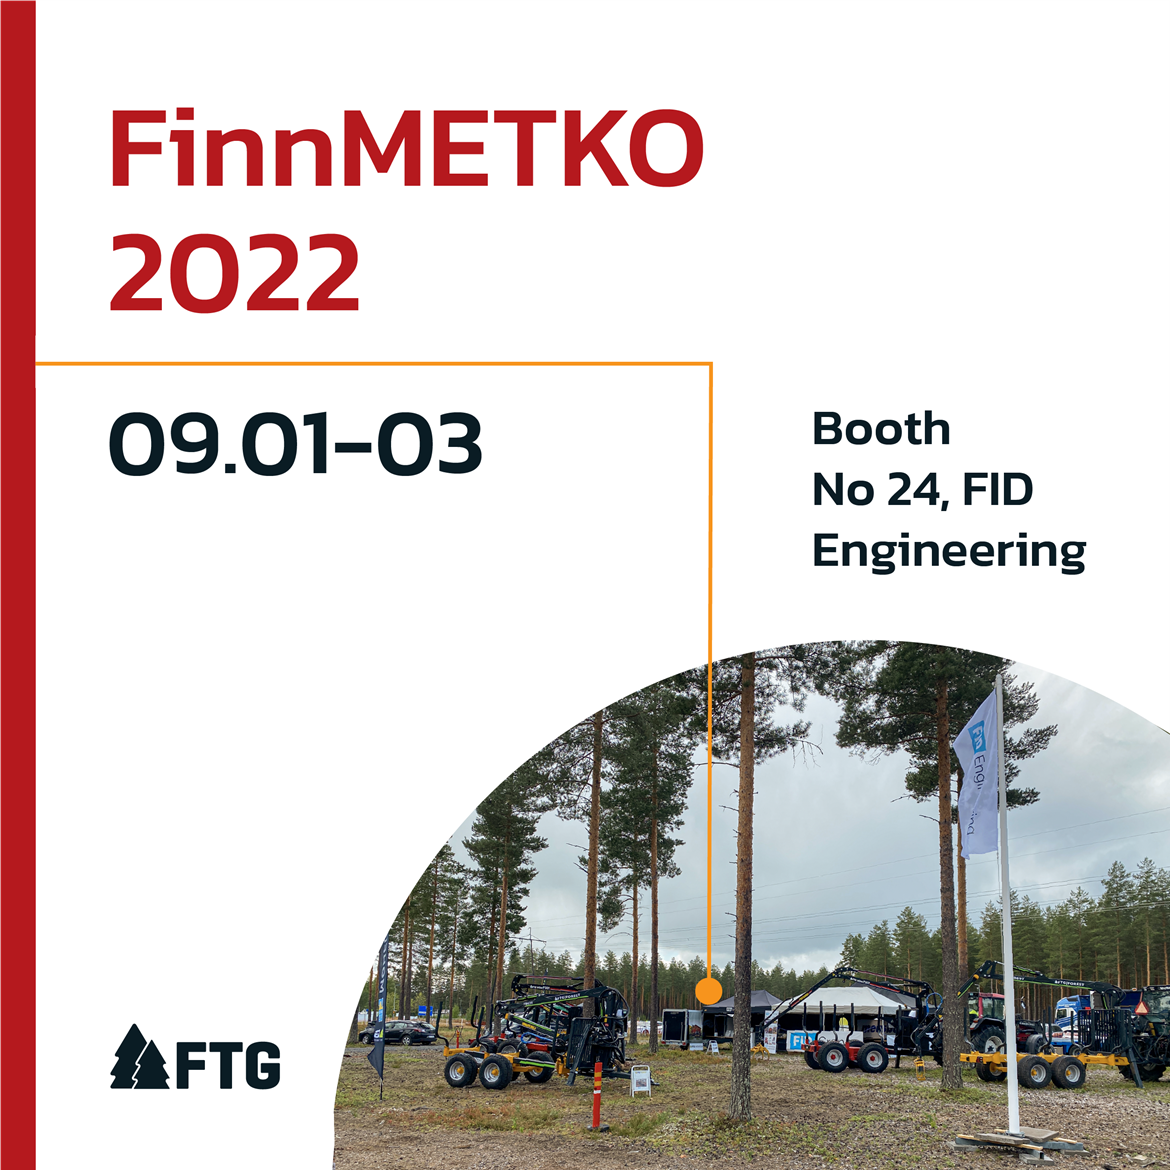 FTG_FID Engineering FinnMETKO 2022_2.3.png